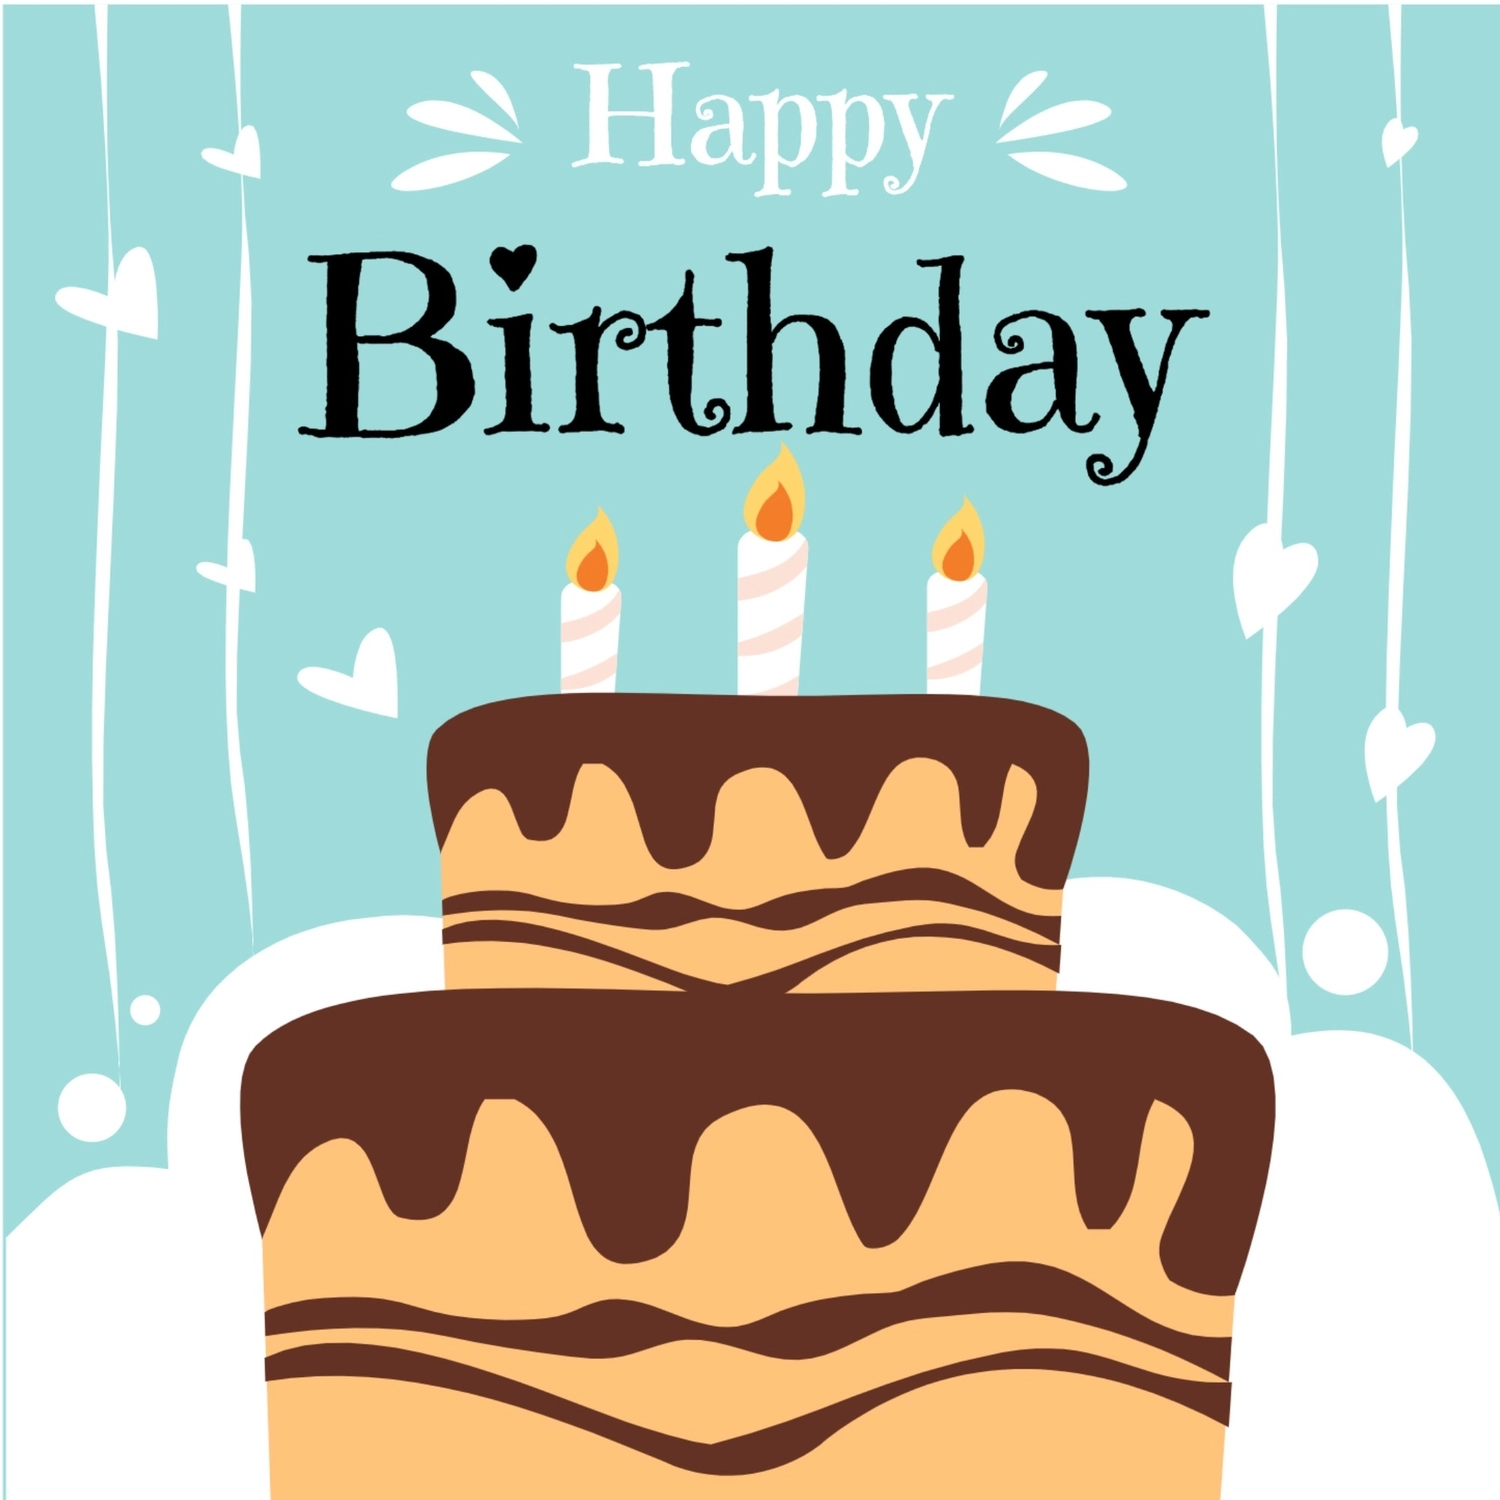 大きな2段の誕生日ケーキ, 기념, 생일 카드, 만들기, 생일 카드 템플릿